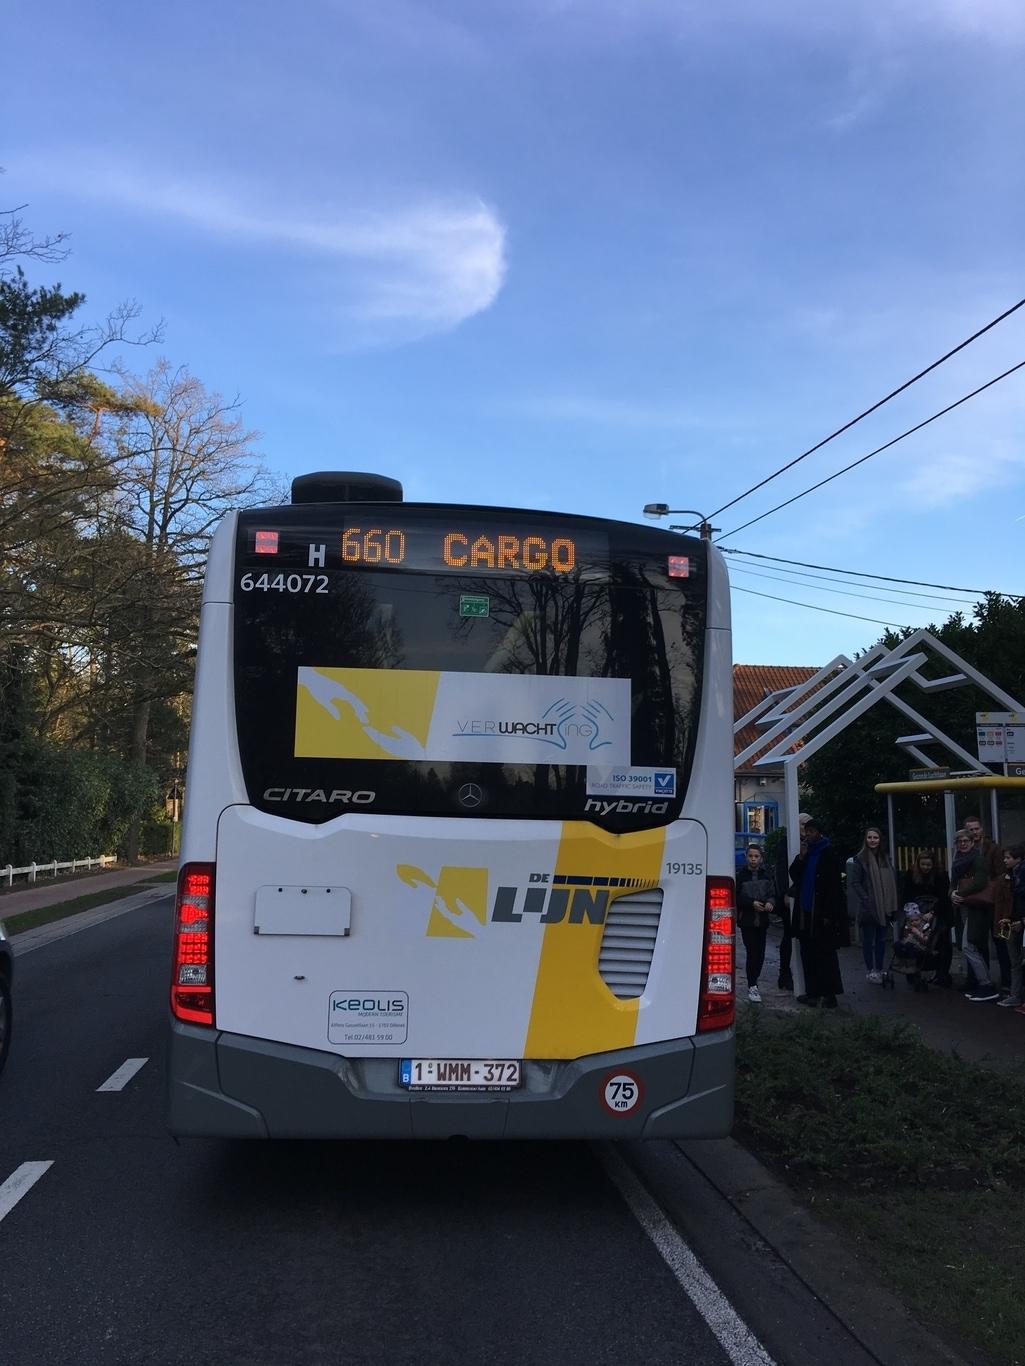 De handen in het logo bieden bescherming aan en refereren tegelijkertijd aan het sjabloon van Branco. De bussen van De Lijn reden rond met het logo.